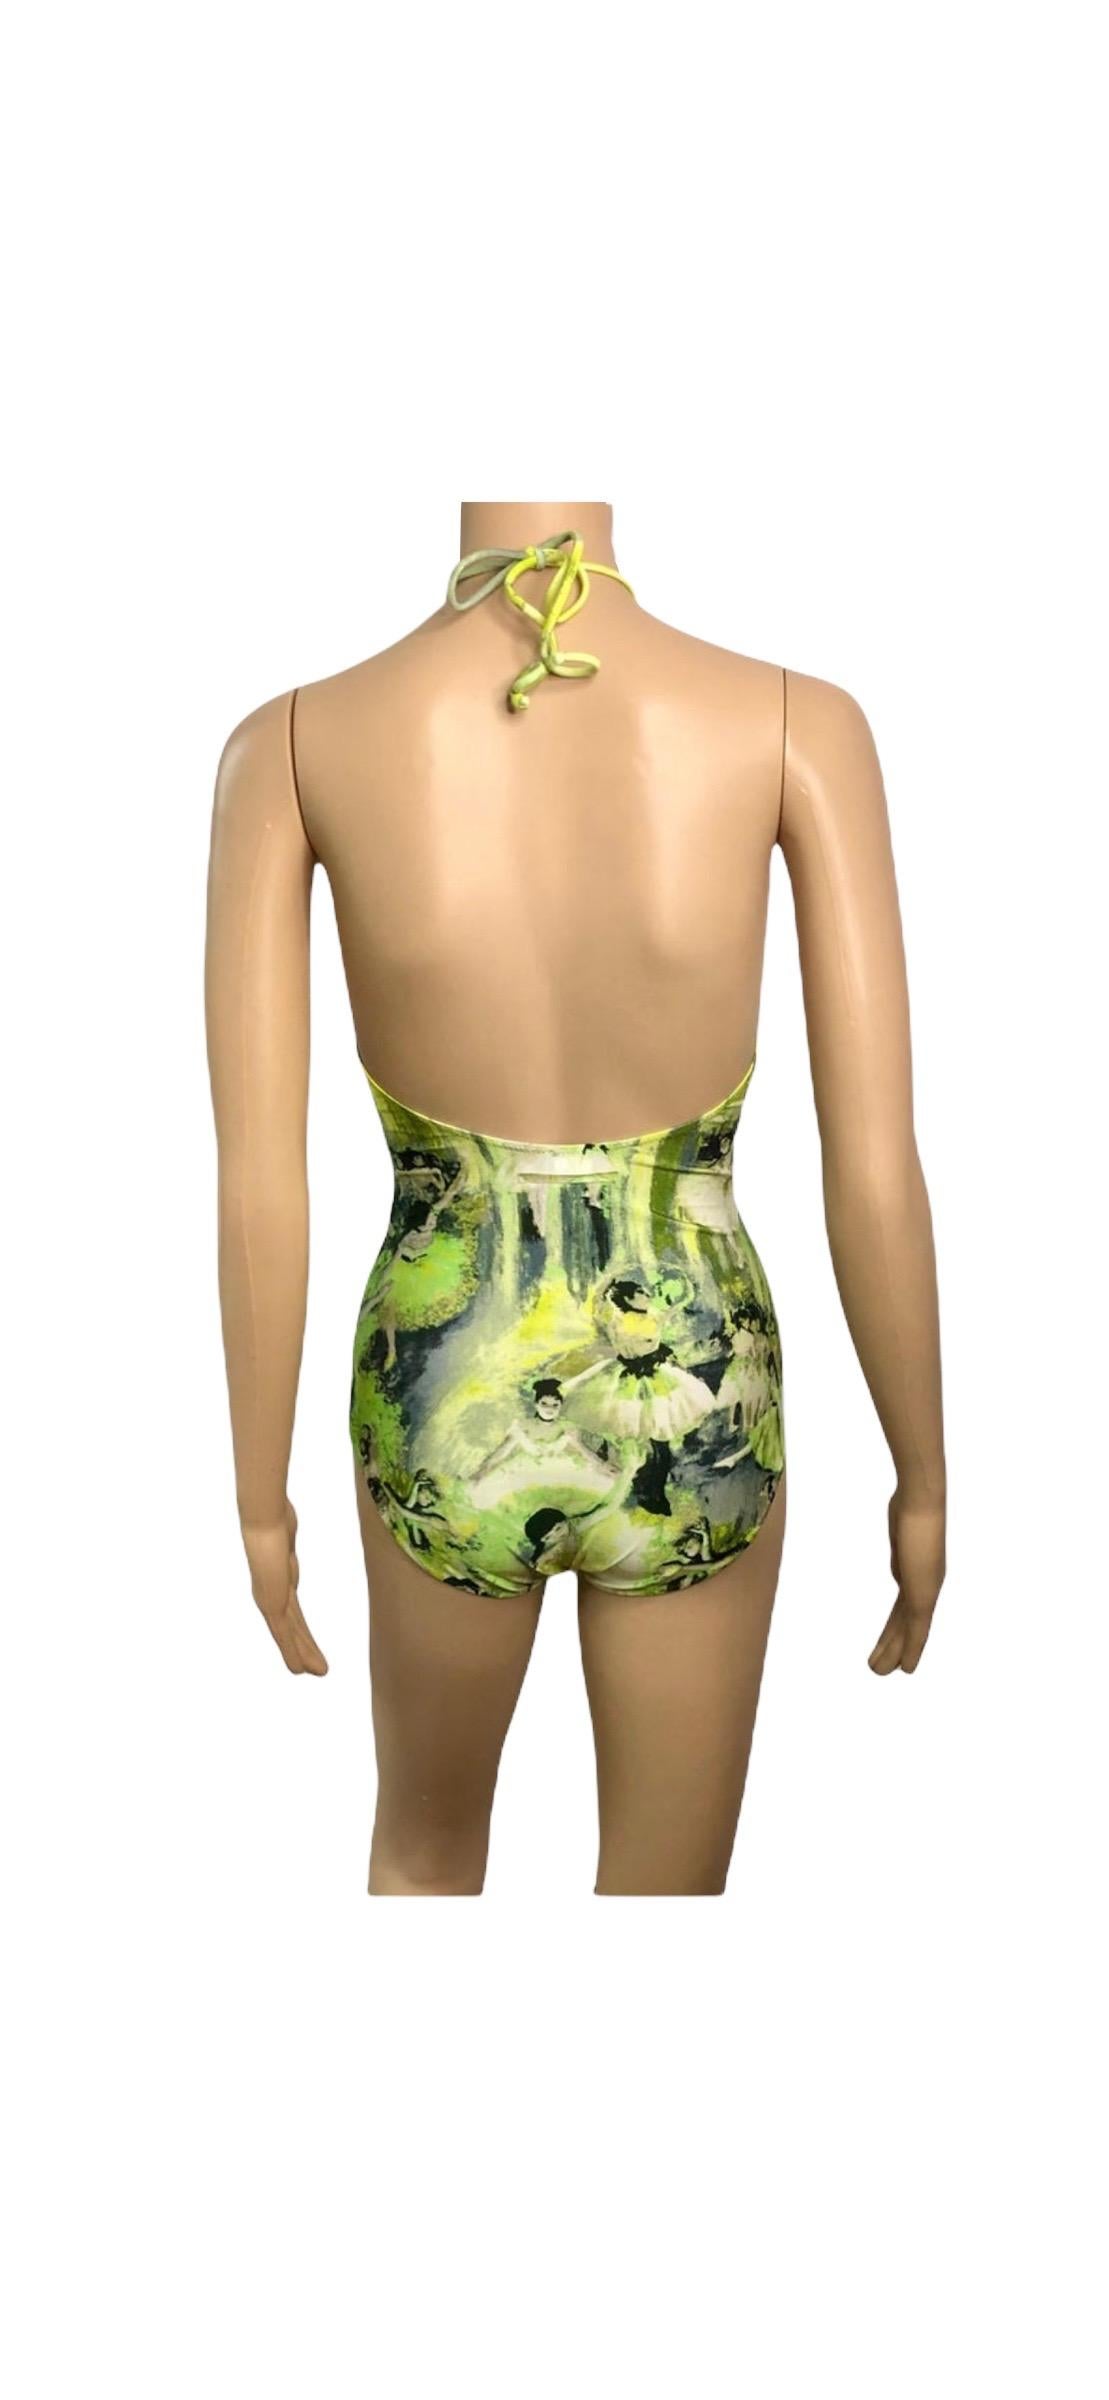 Jean Paul Gaultier Soleil S/S 2004 Degas Ballet Bodysuit Swimwear Swimsuit For Sale 8